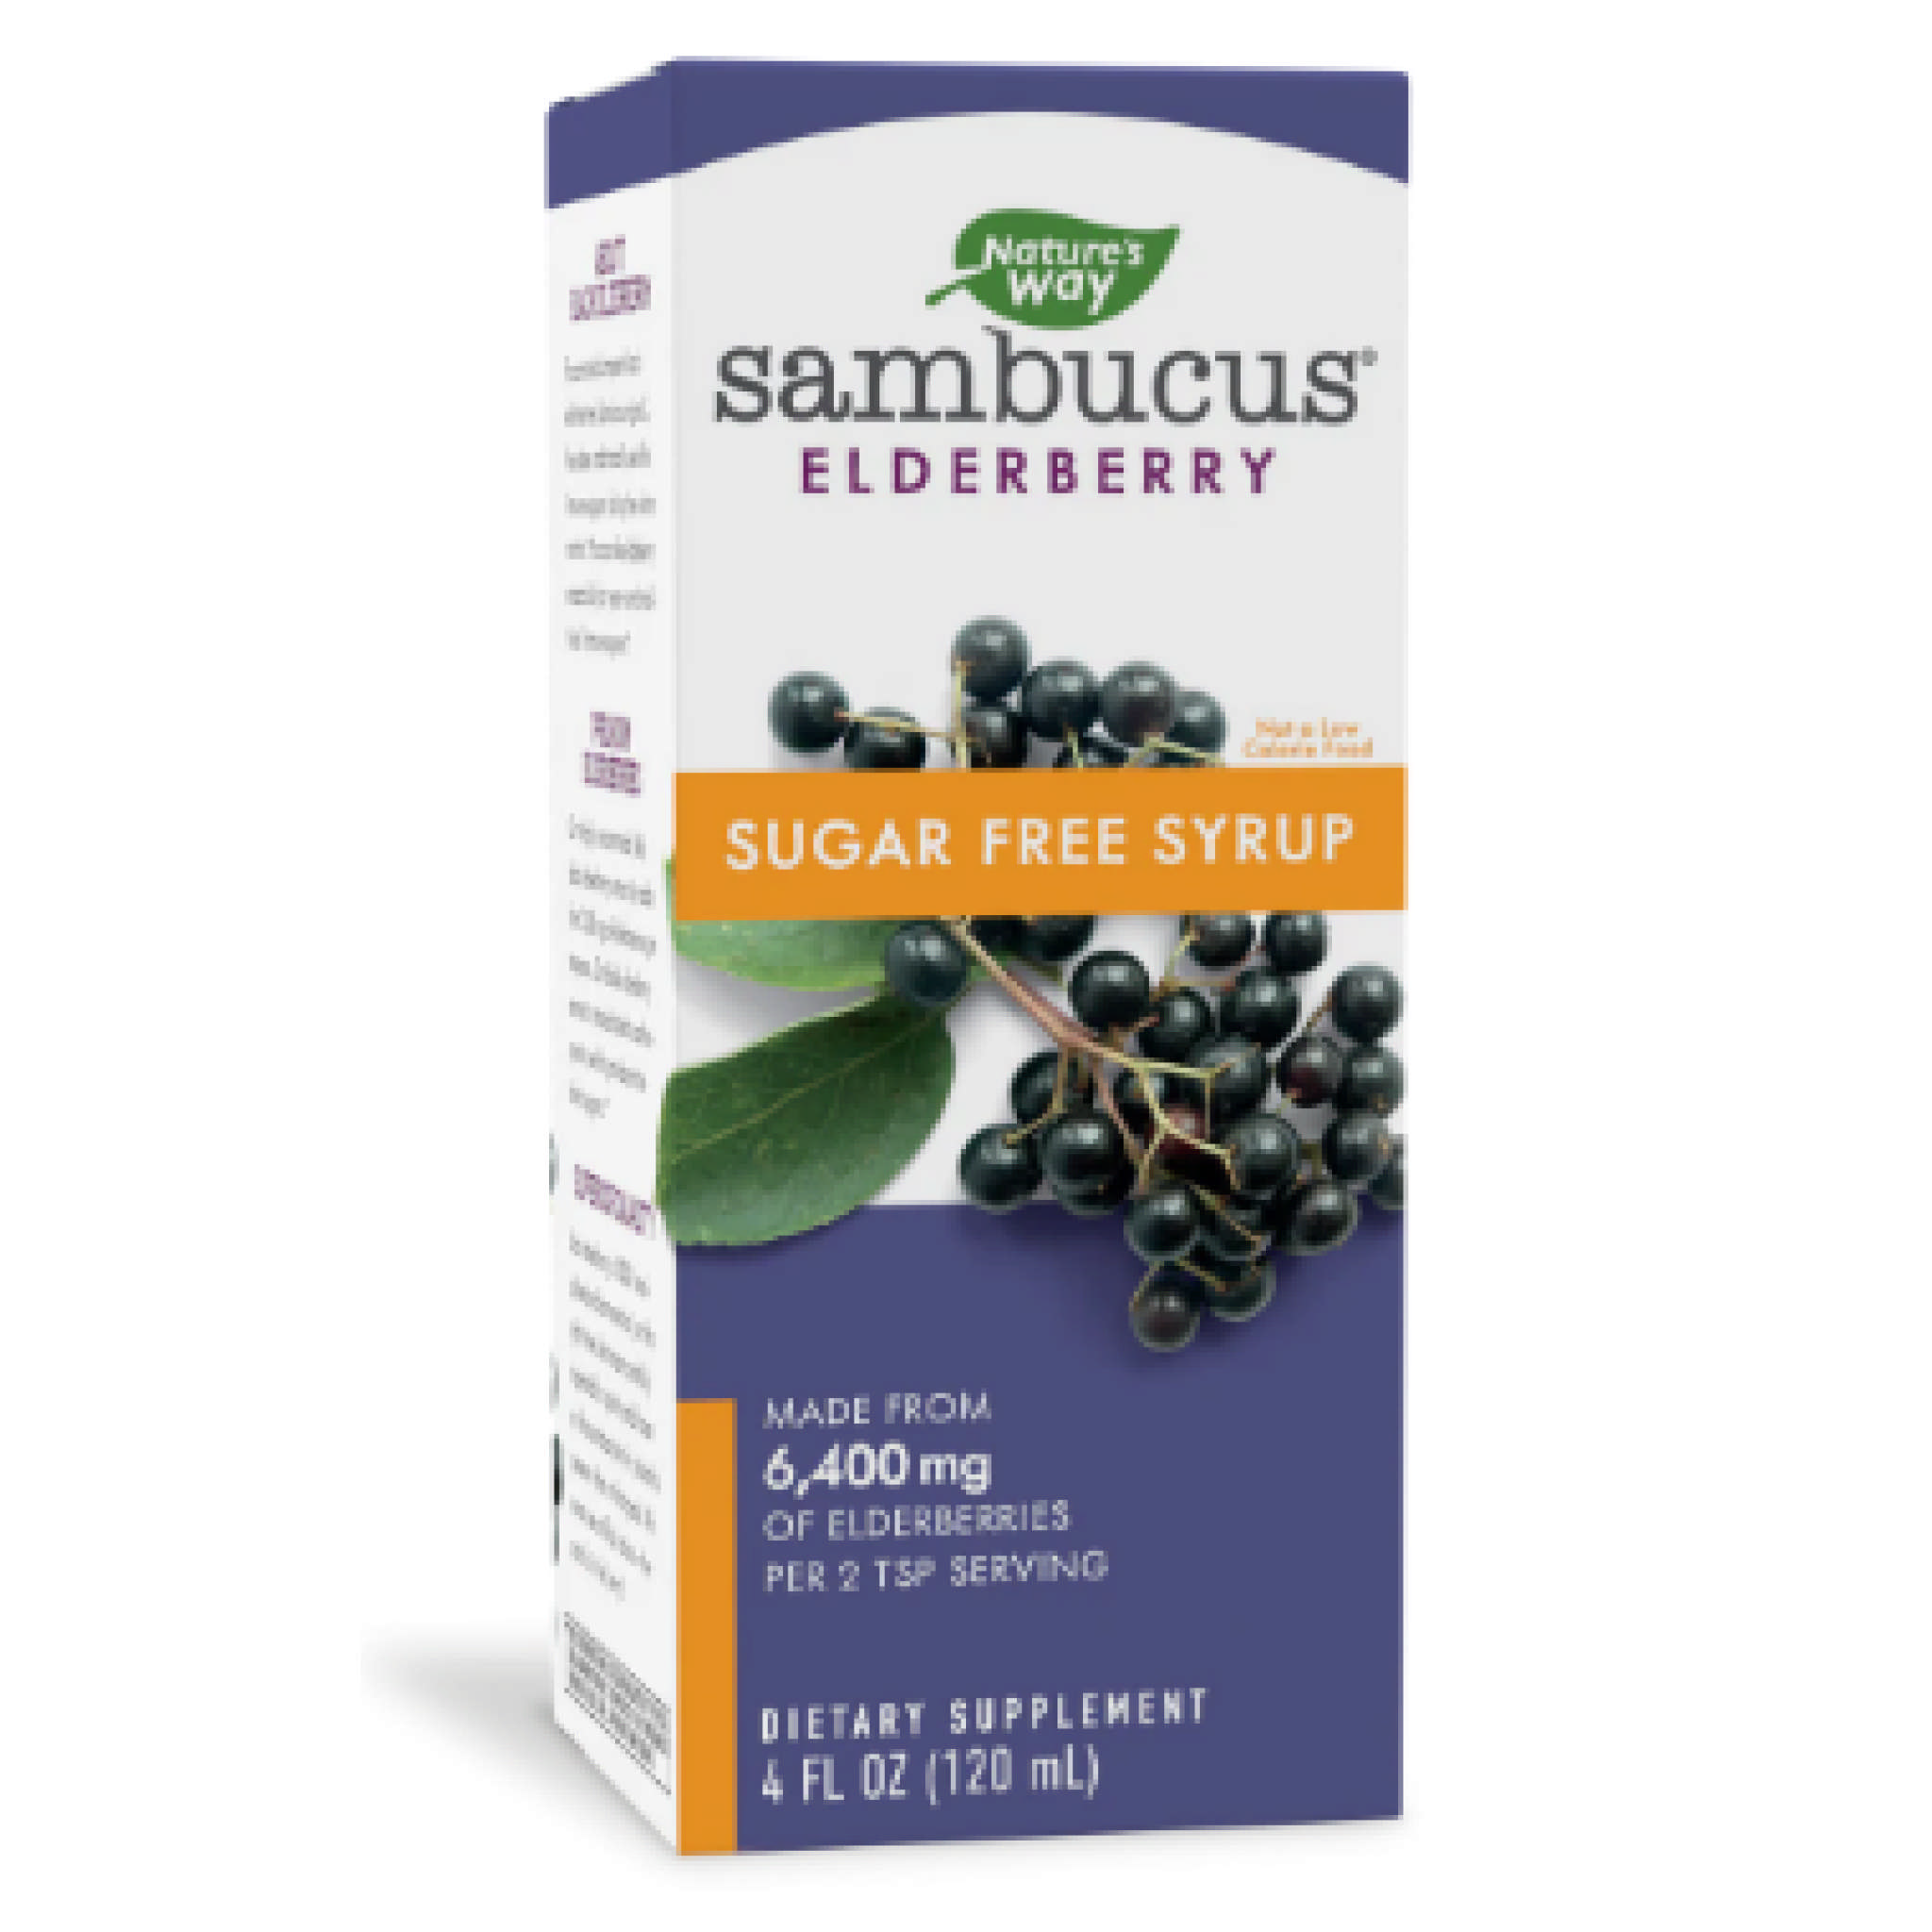 Natures Way Vitamin - Sambucus Sugar Free